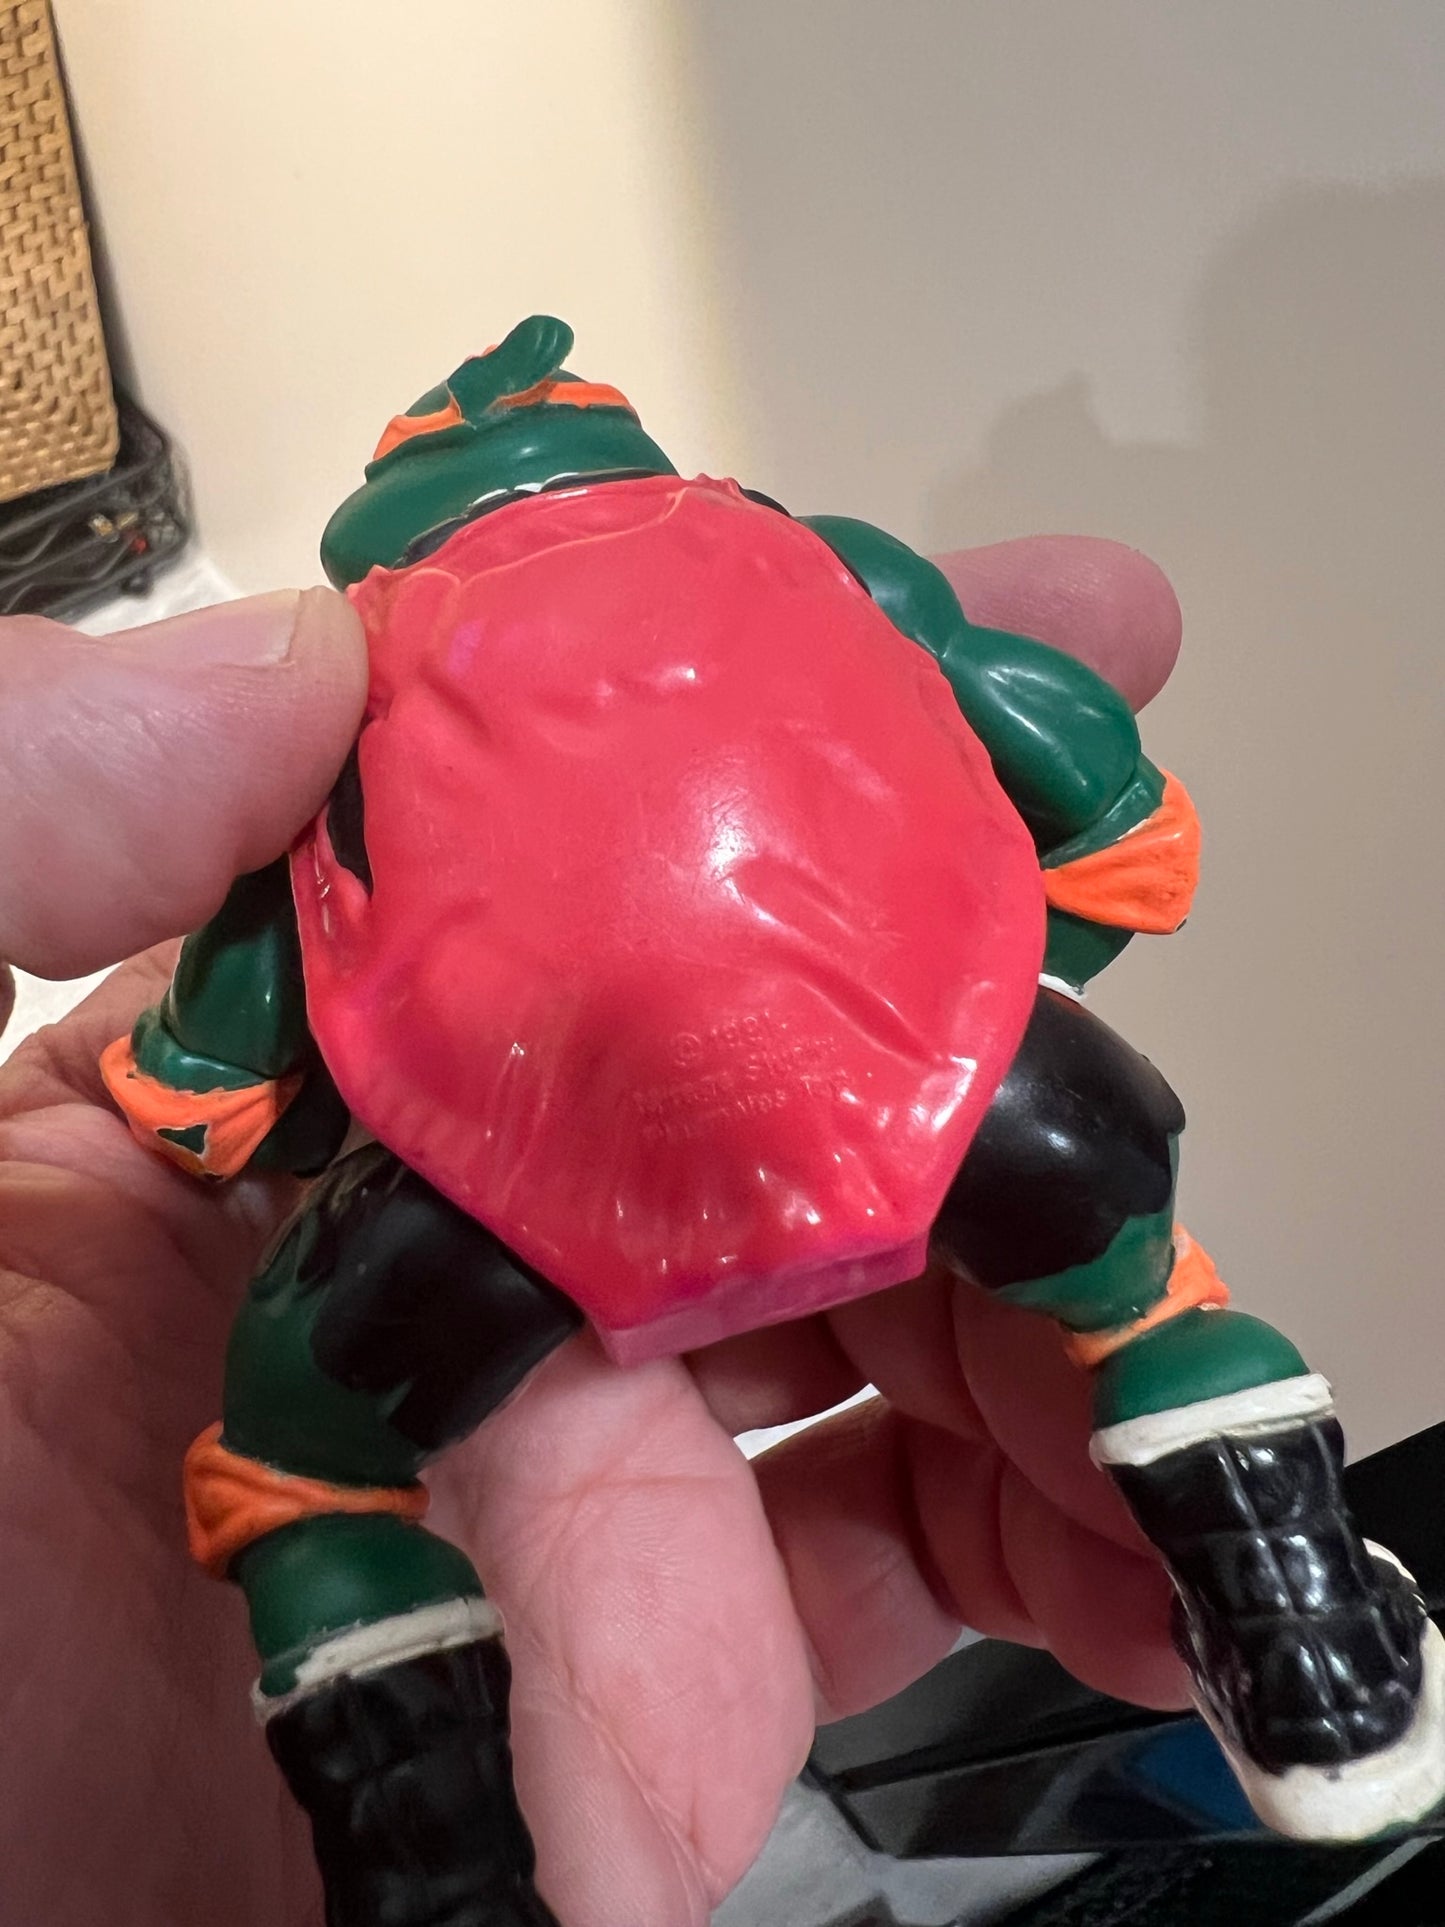 Teenage Mutant Ninja Turtle (TMNT) Sports figures